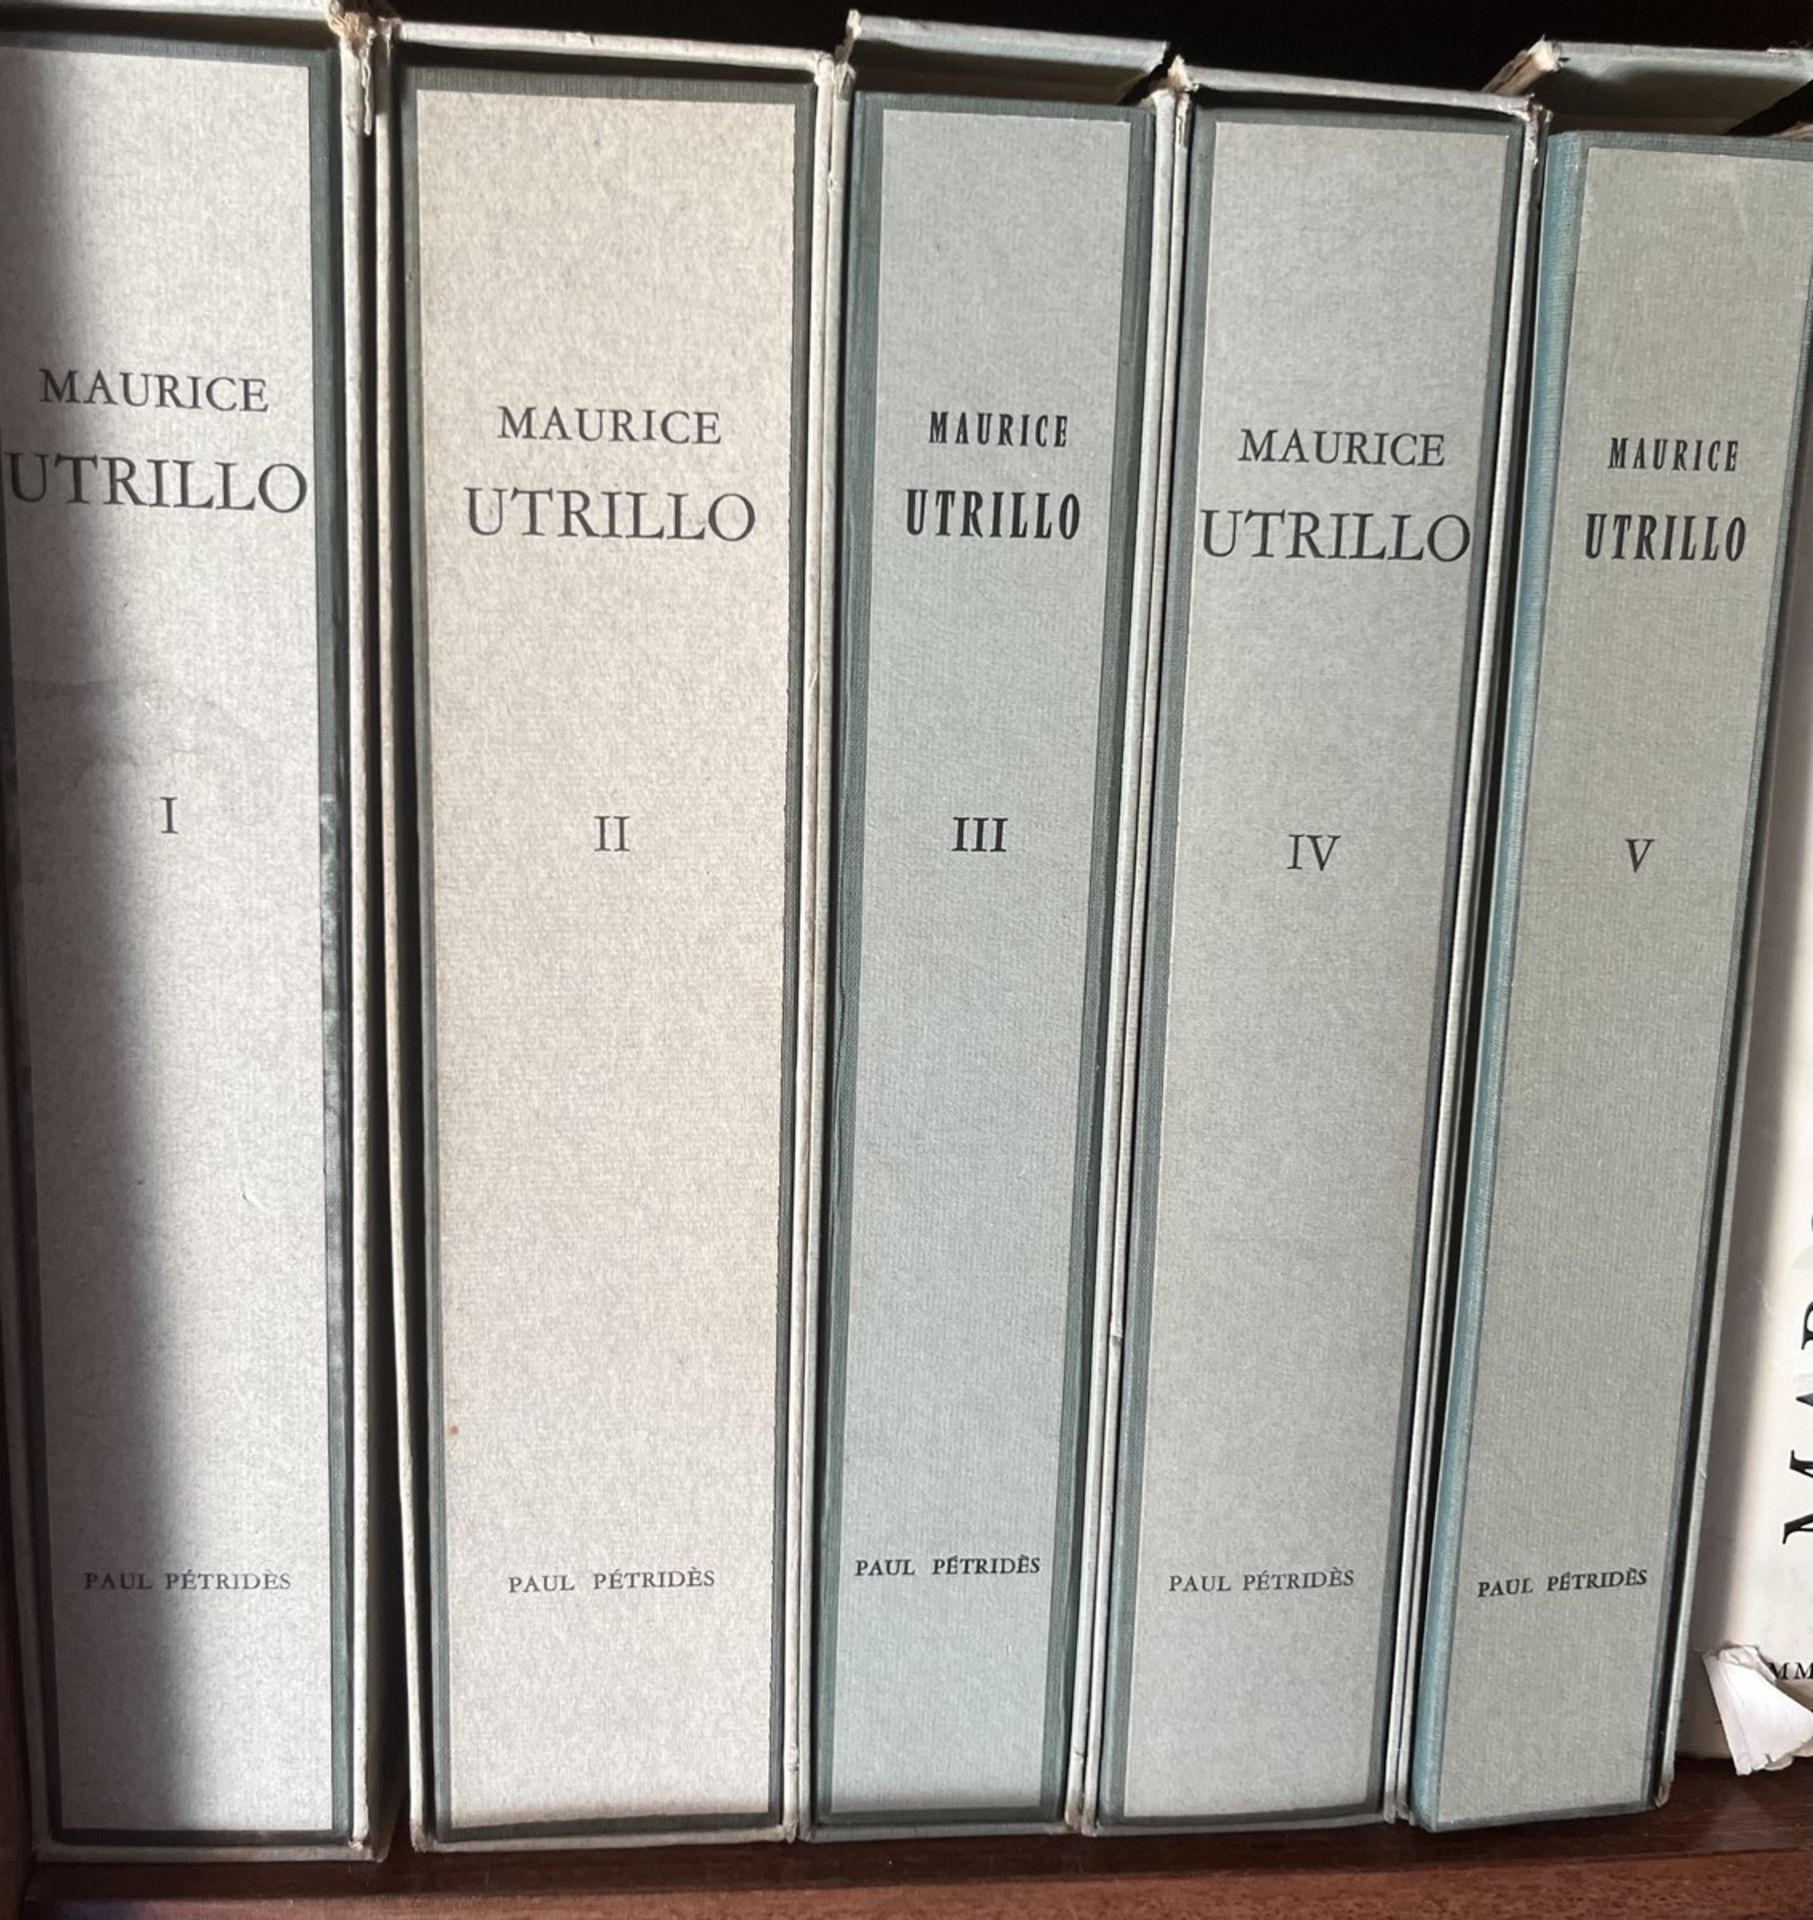 [MAURICE UTRILLO]. L'Œuvre Complet de Maurice Utrillo Volume I à V. Paul Pétridès Editeur, Paris 196